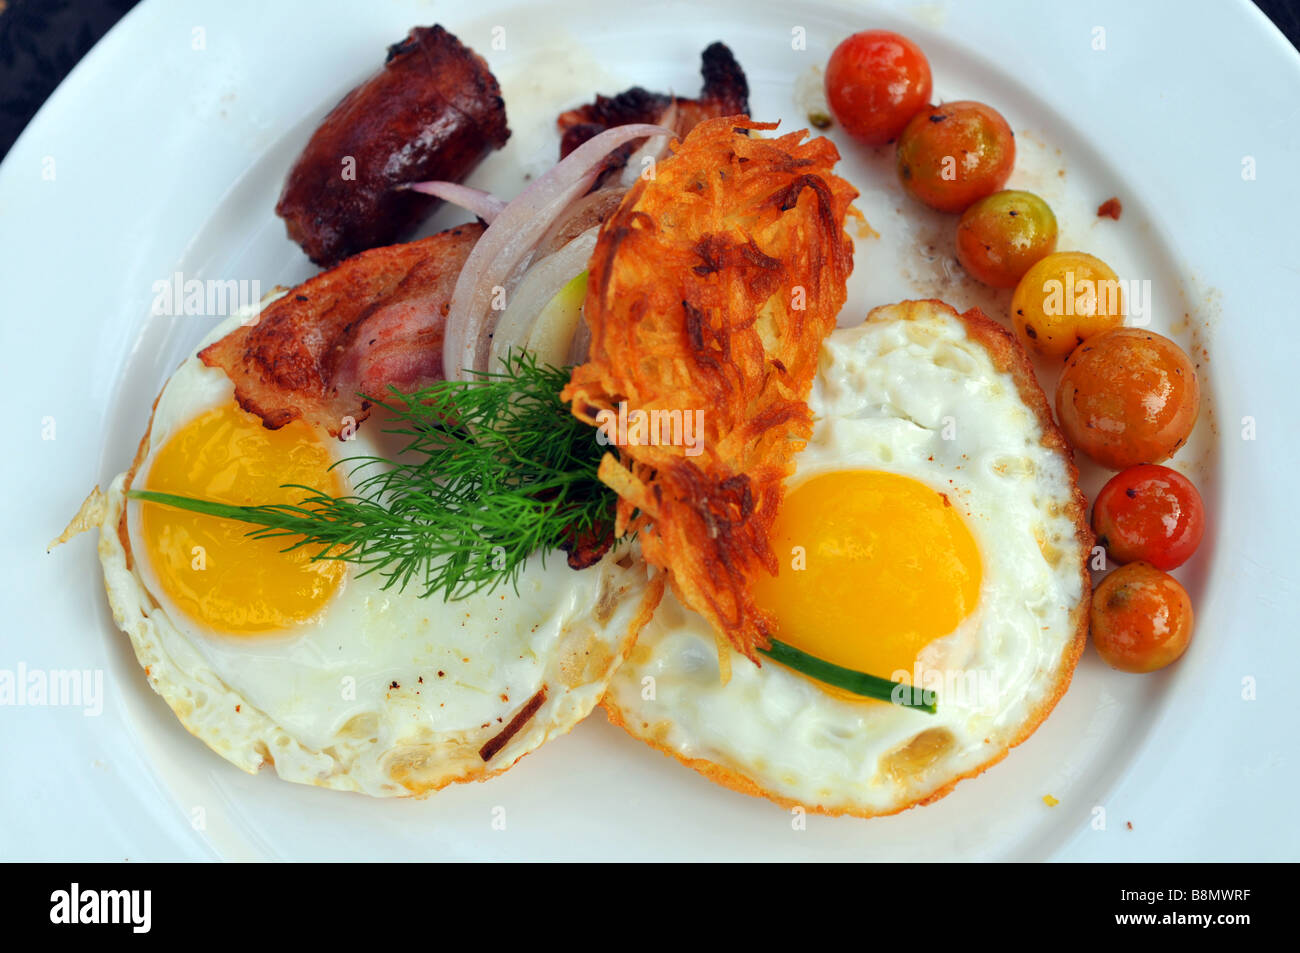 Desayuno, el plato de huevos fritos, tocino, salchichas y tomate Foto de stock